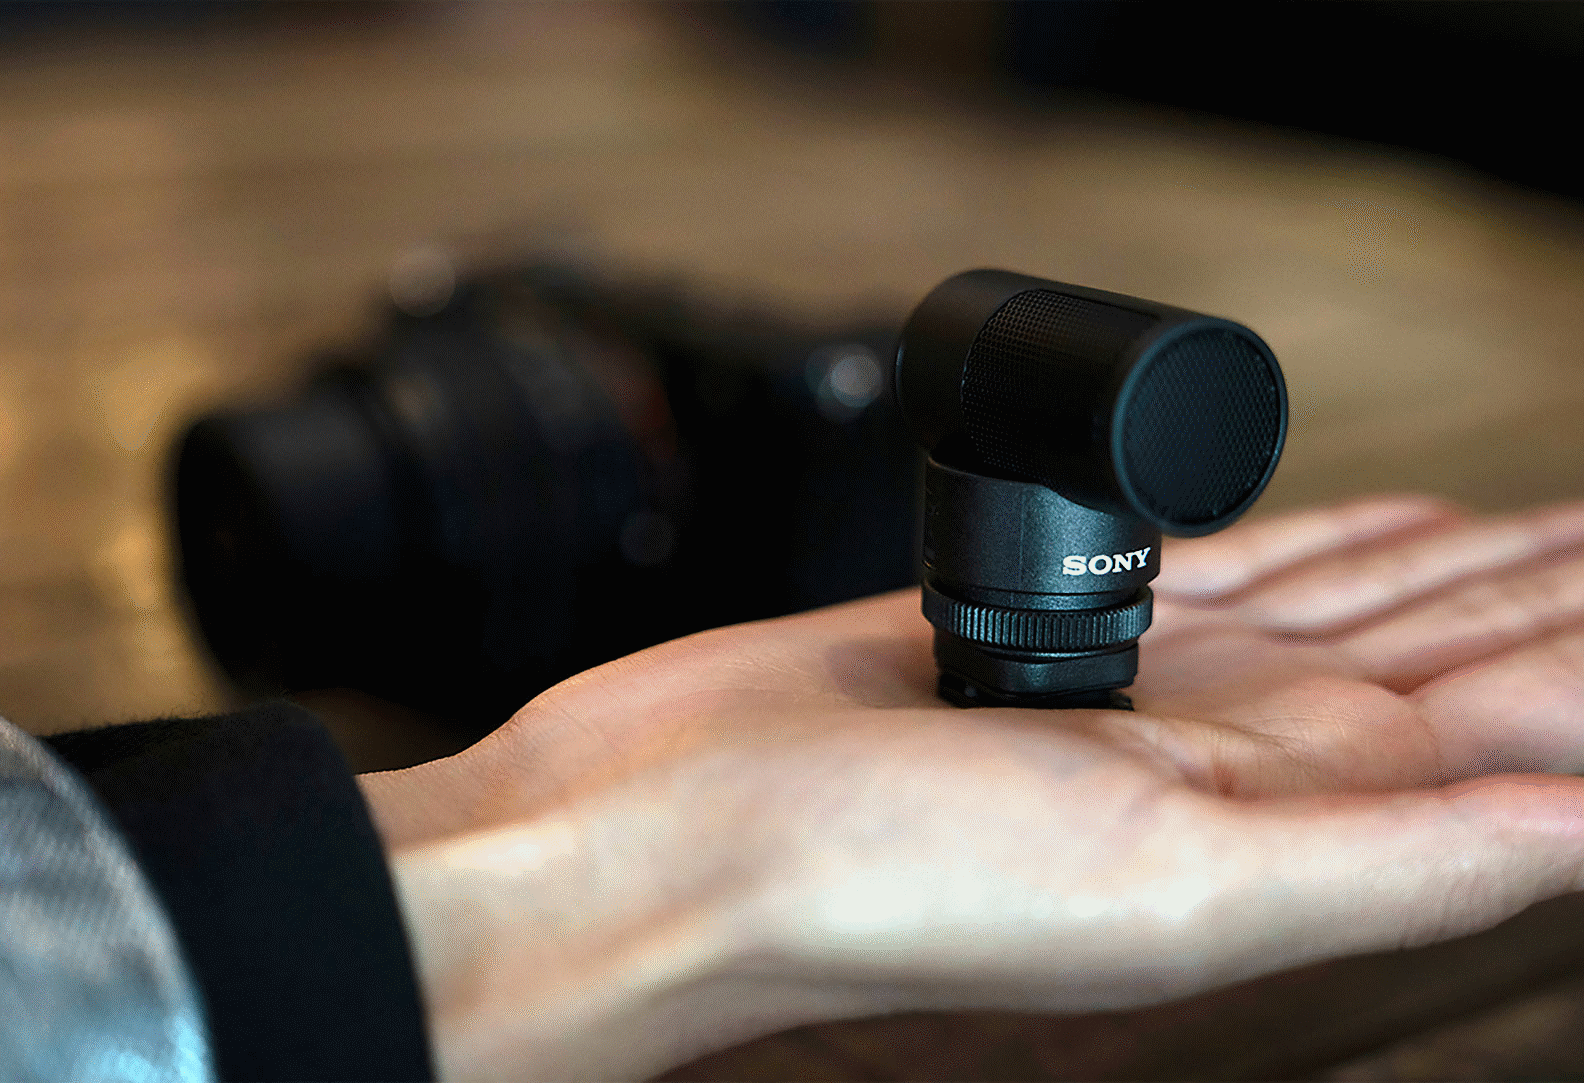 Zdjęcie mikrofonu ECM-G1 na dłoni, wystarczająco małego, by zmieścić się w jednej ręce.